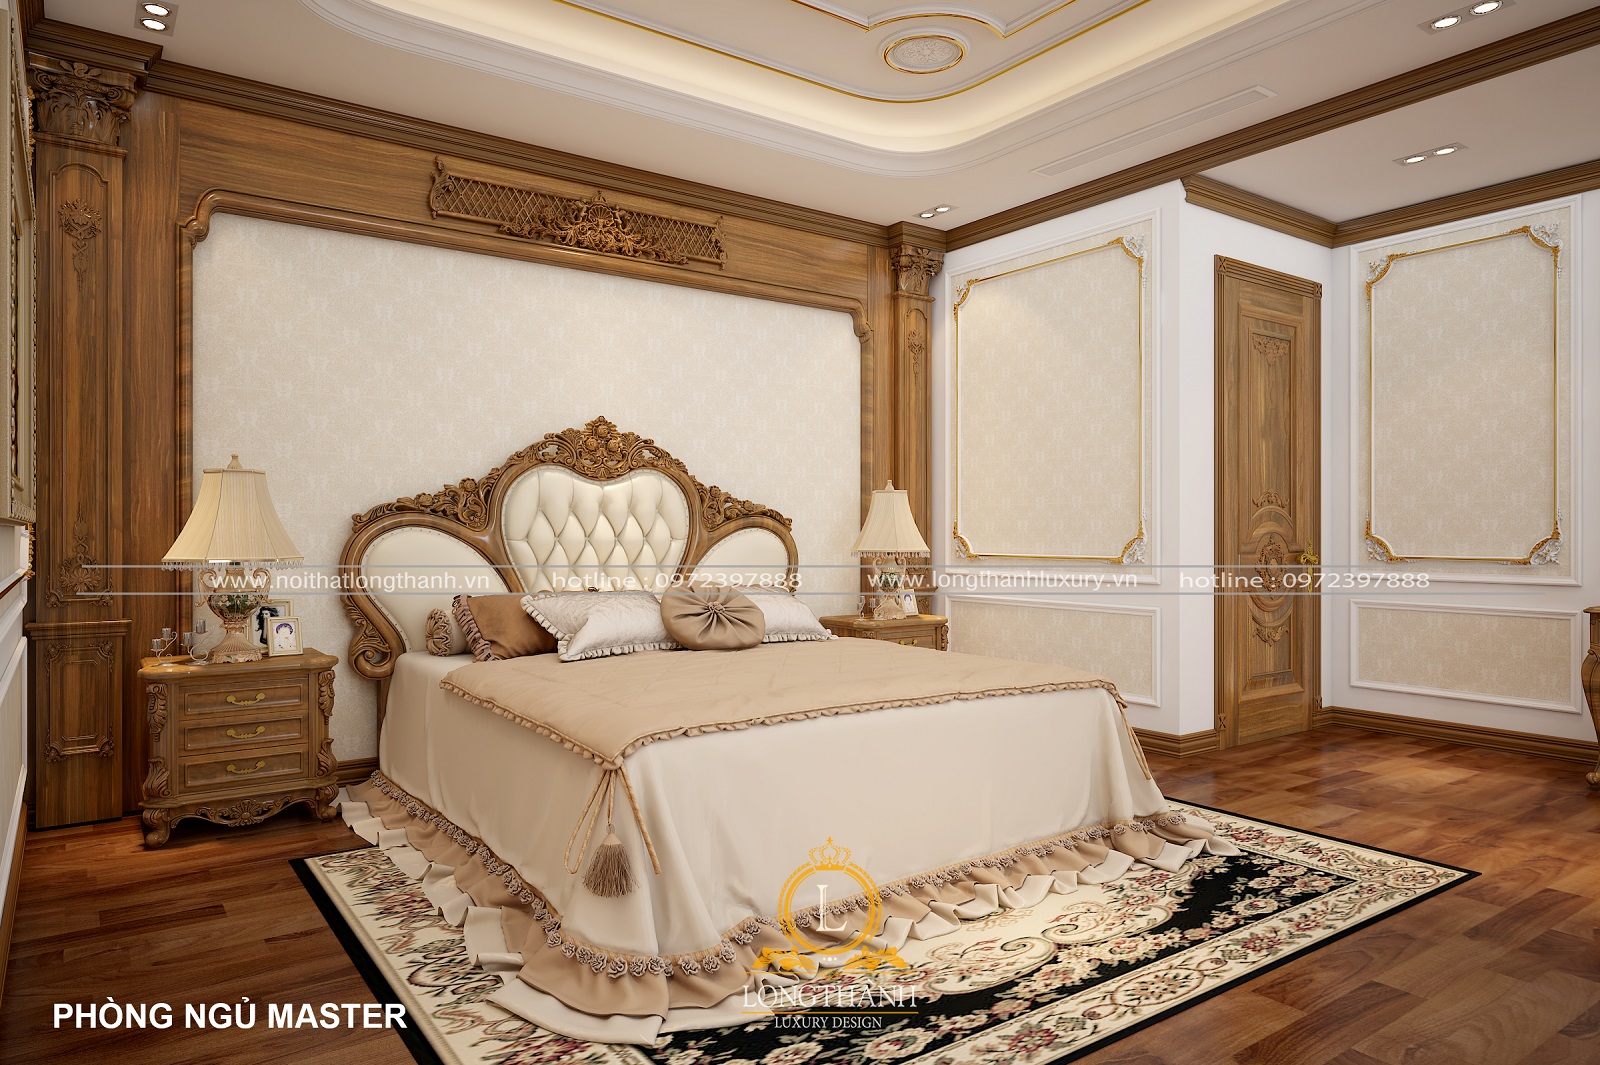 Kích thước tiêu chuẩn để có 1 phòng ngủ master đẹp